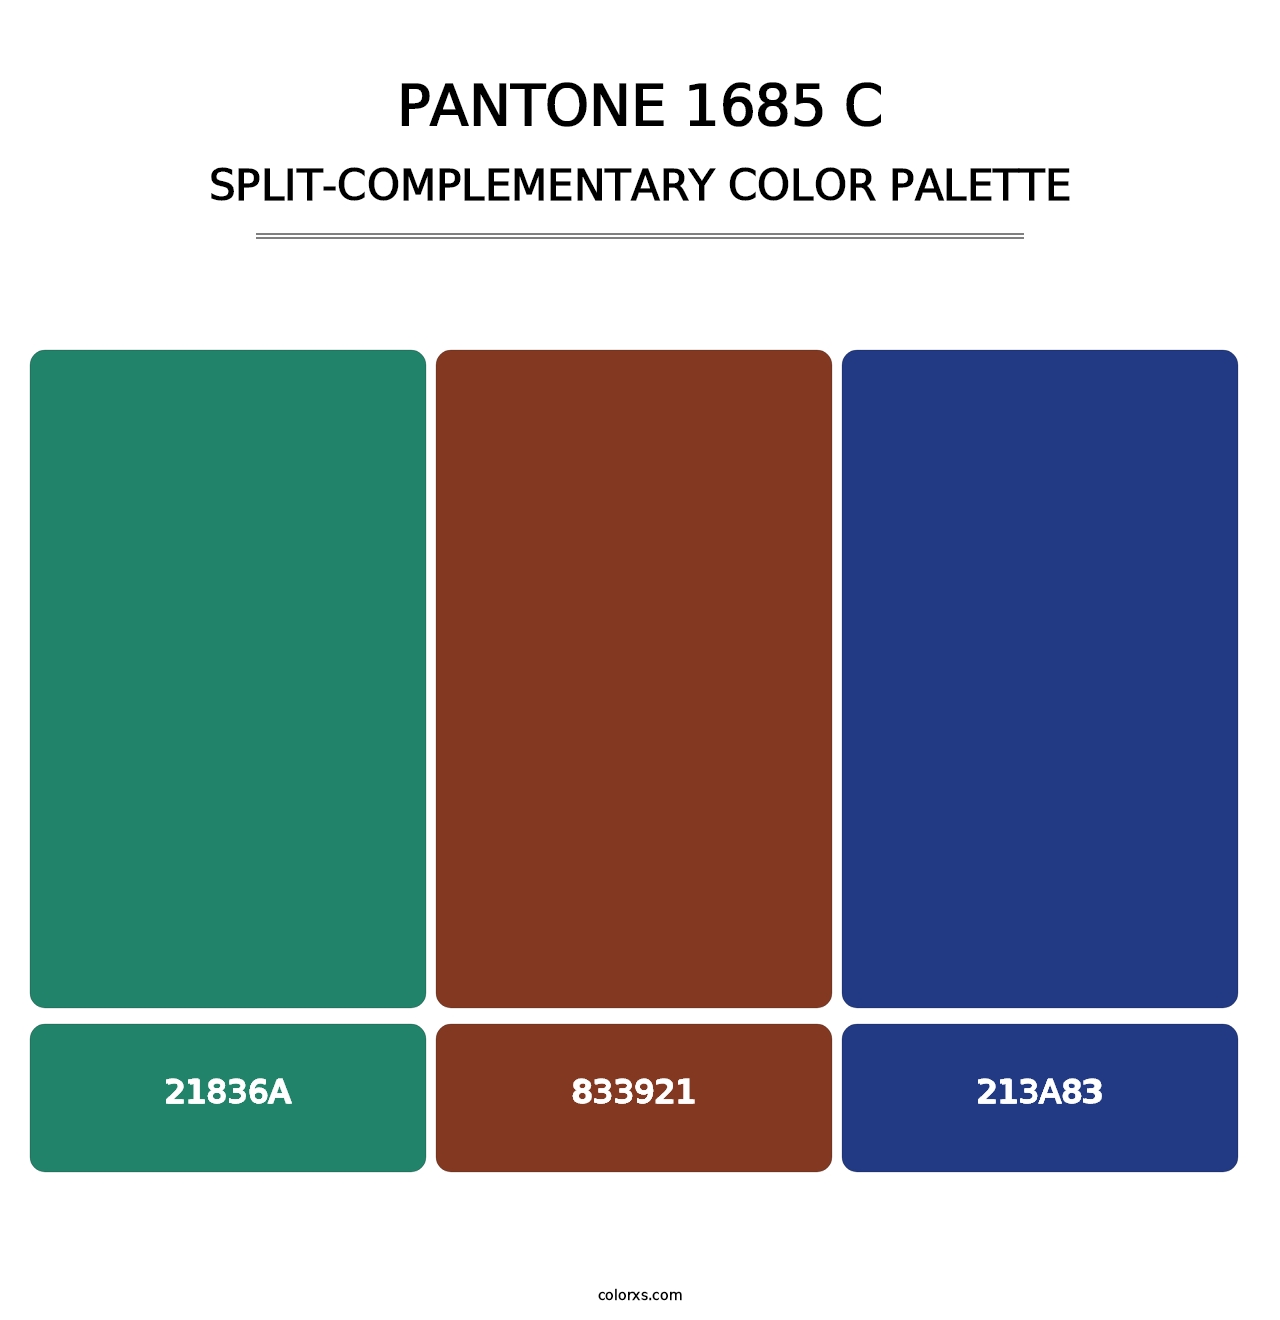 PANTONE 1685 C - Split-Complementary Color Palette